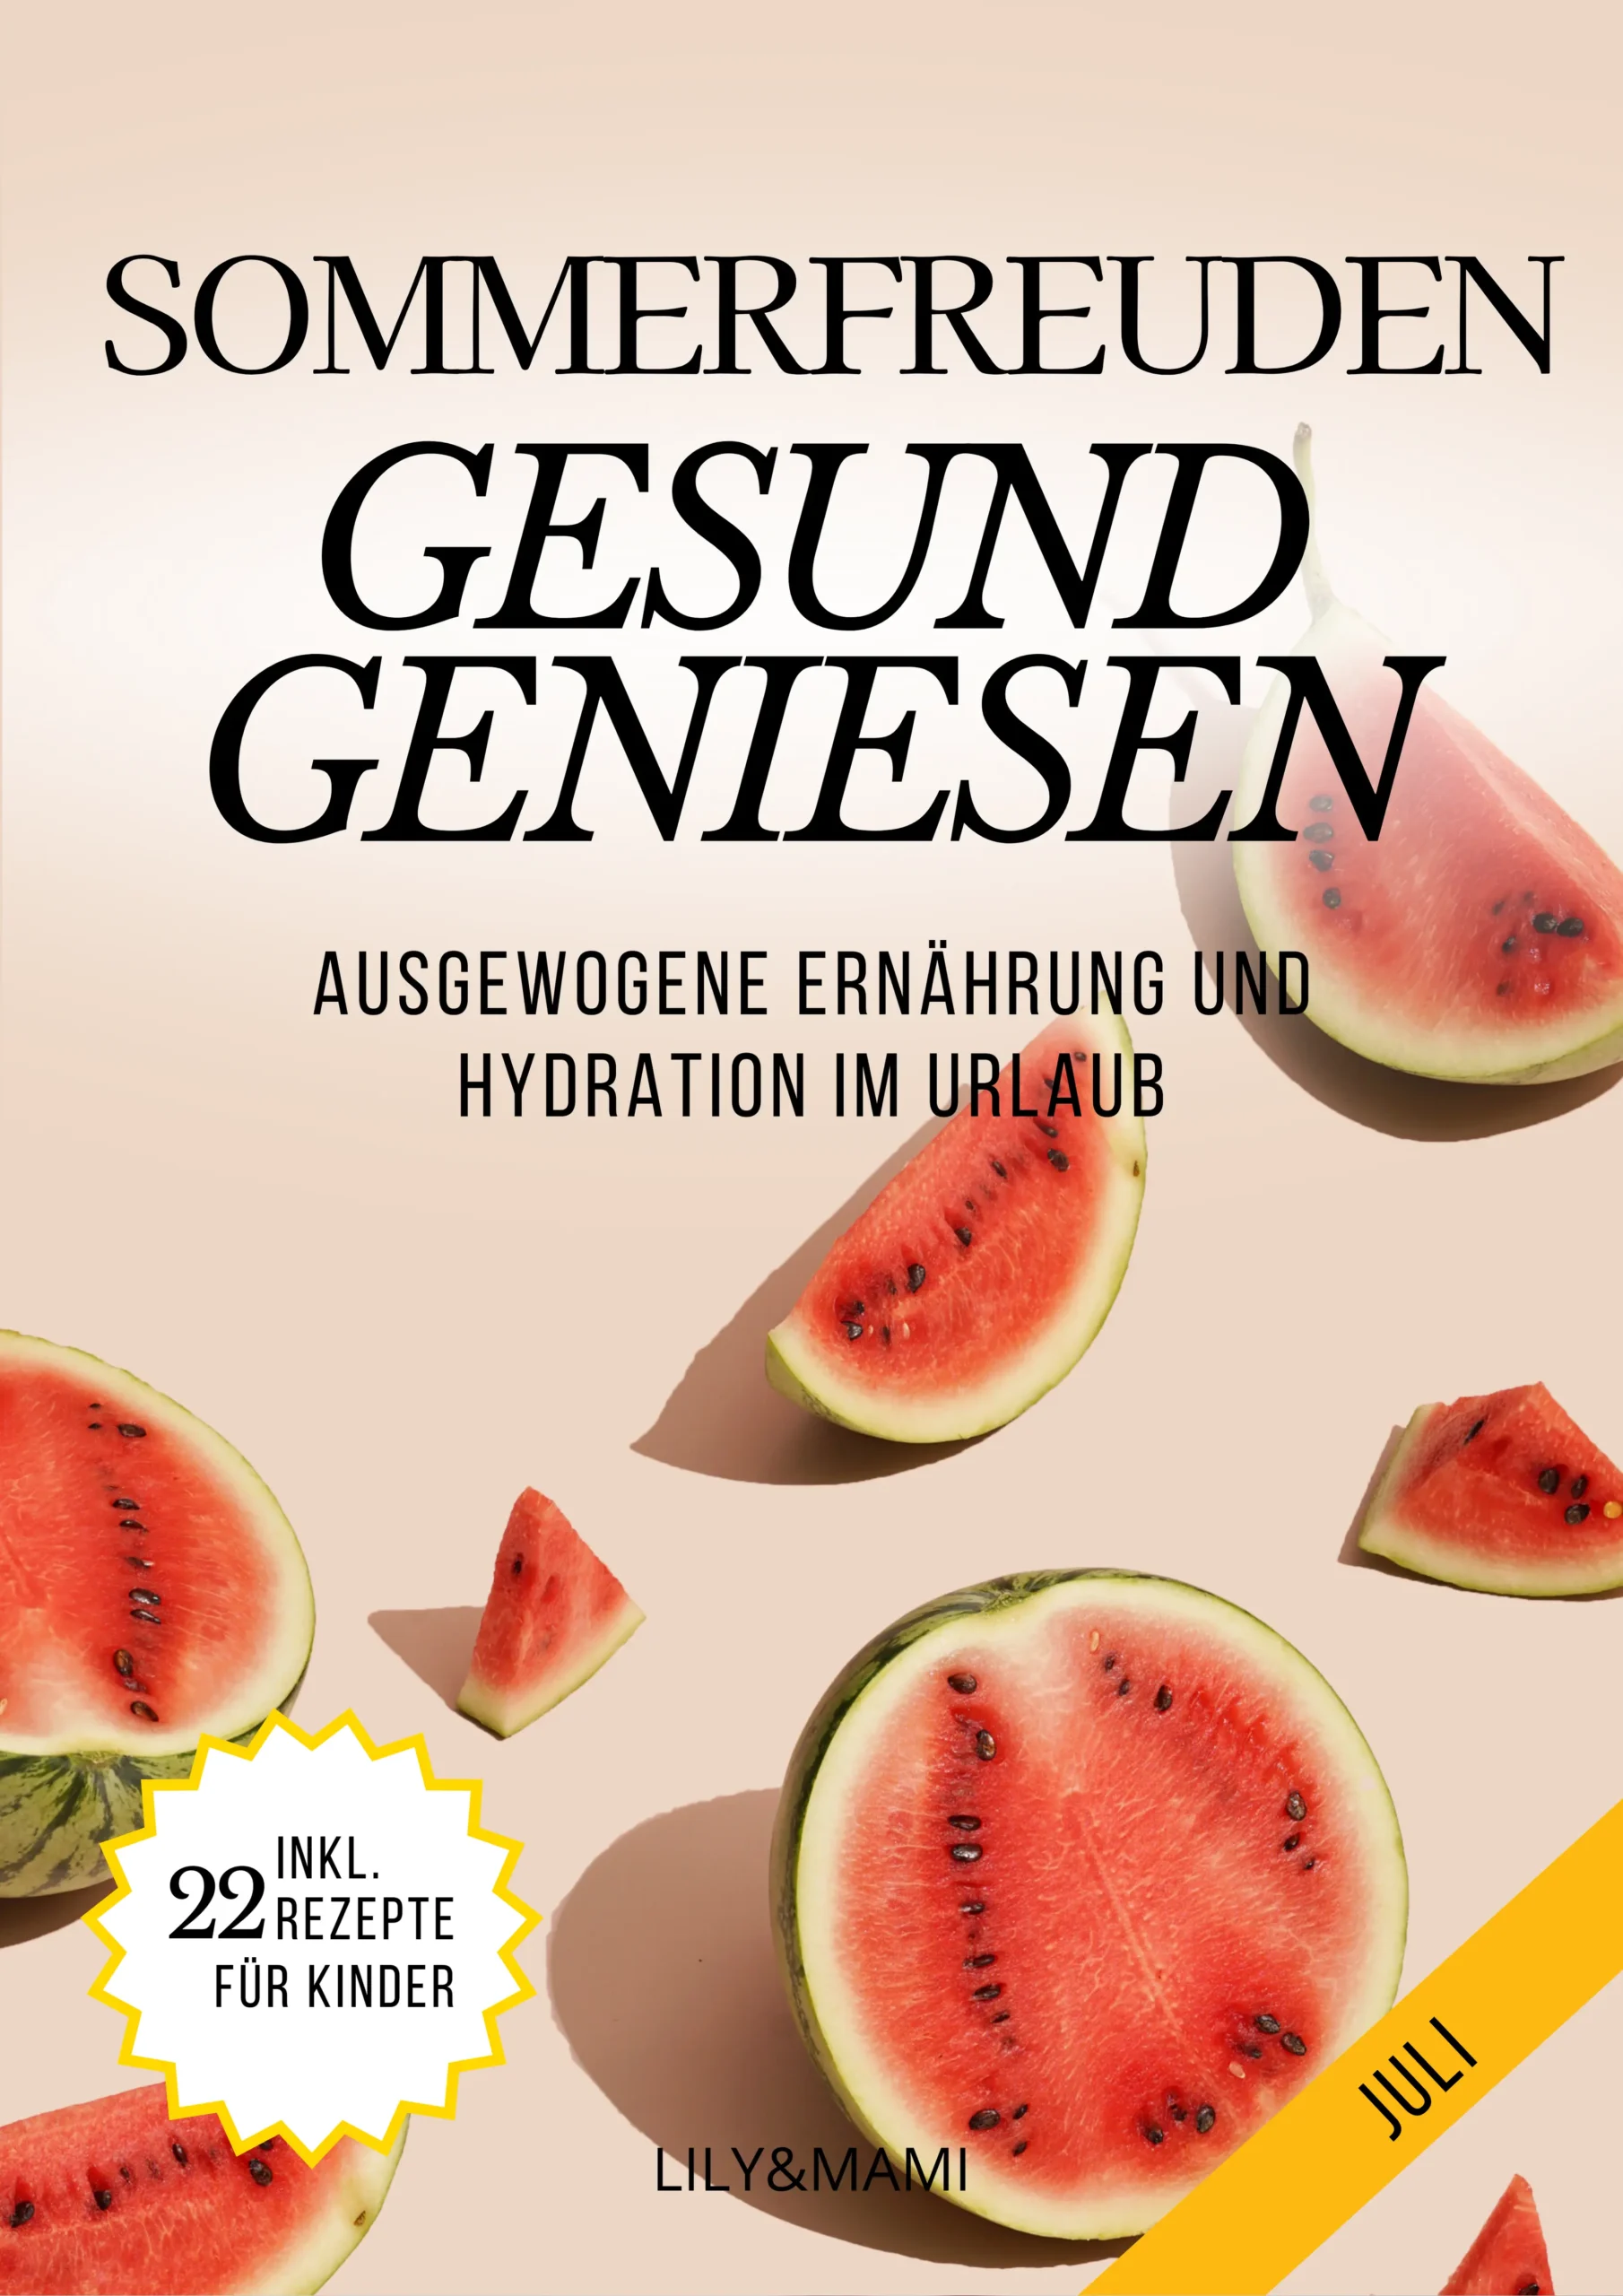 7.-Juli-Sommerfreunden-Gesund-geniessen-scaled-1-1.webp